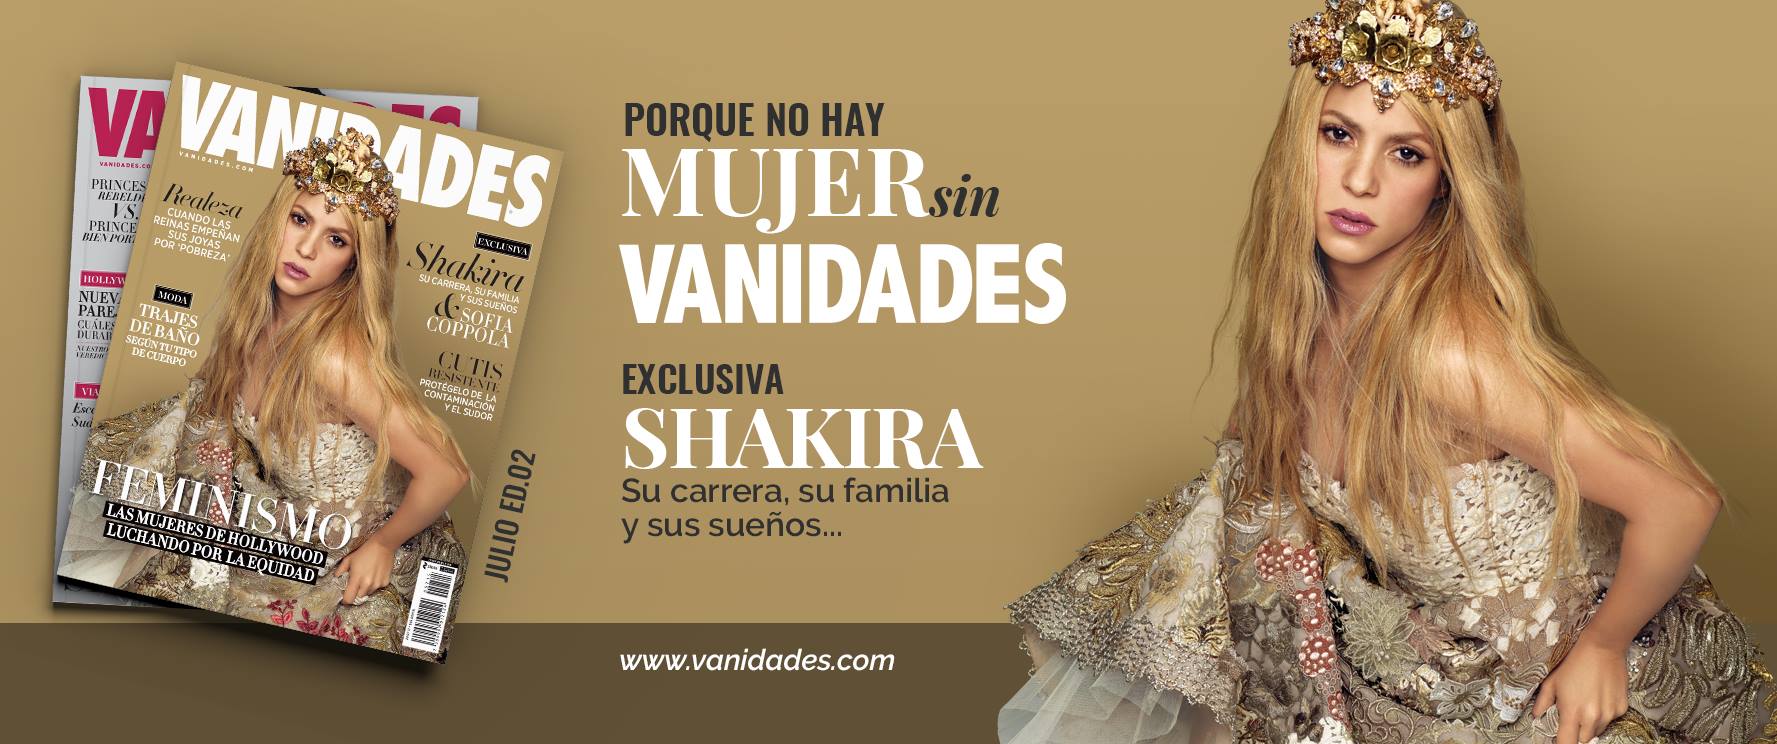 Exclusivo! Confira a entrevista completa de Shakira para a revista Vanidades